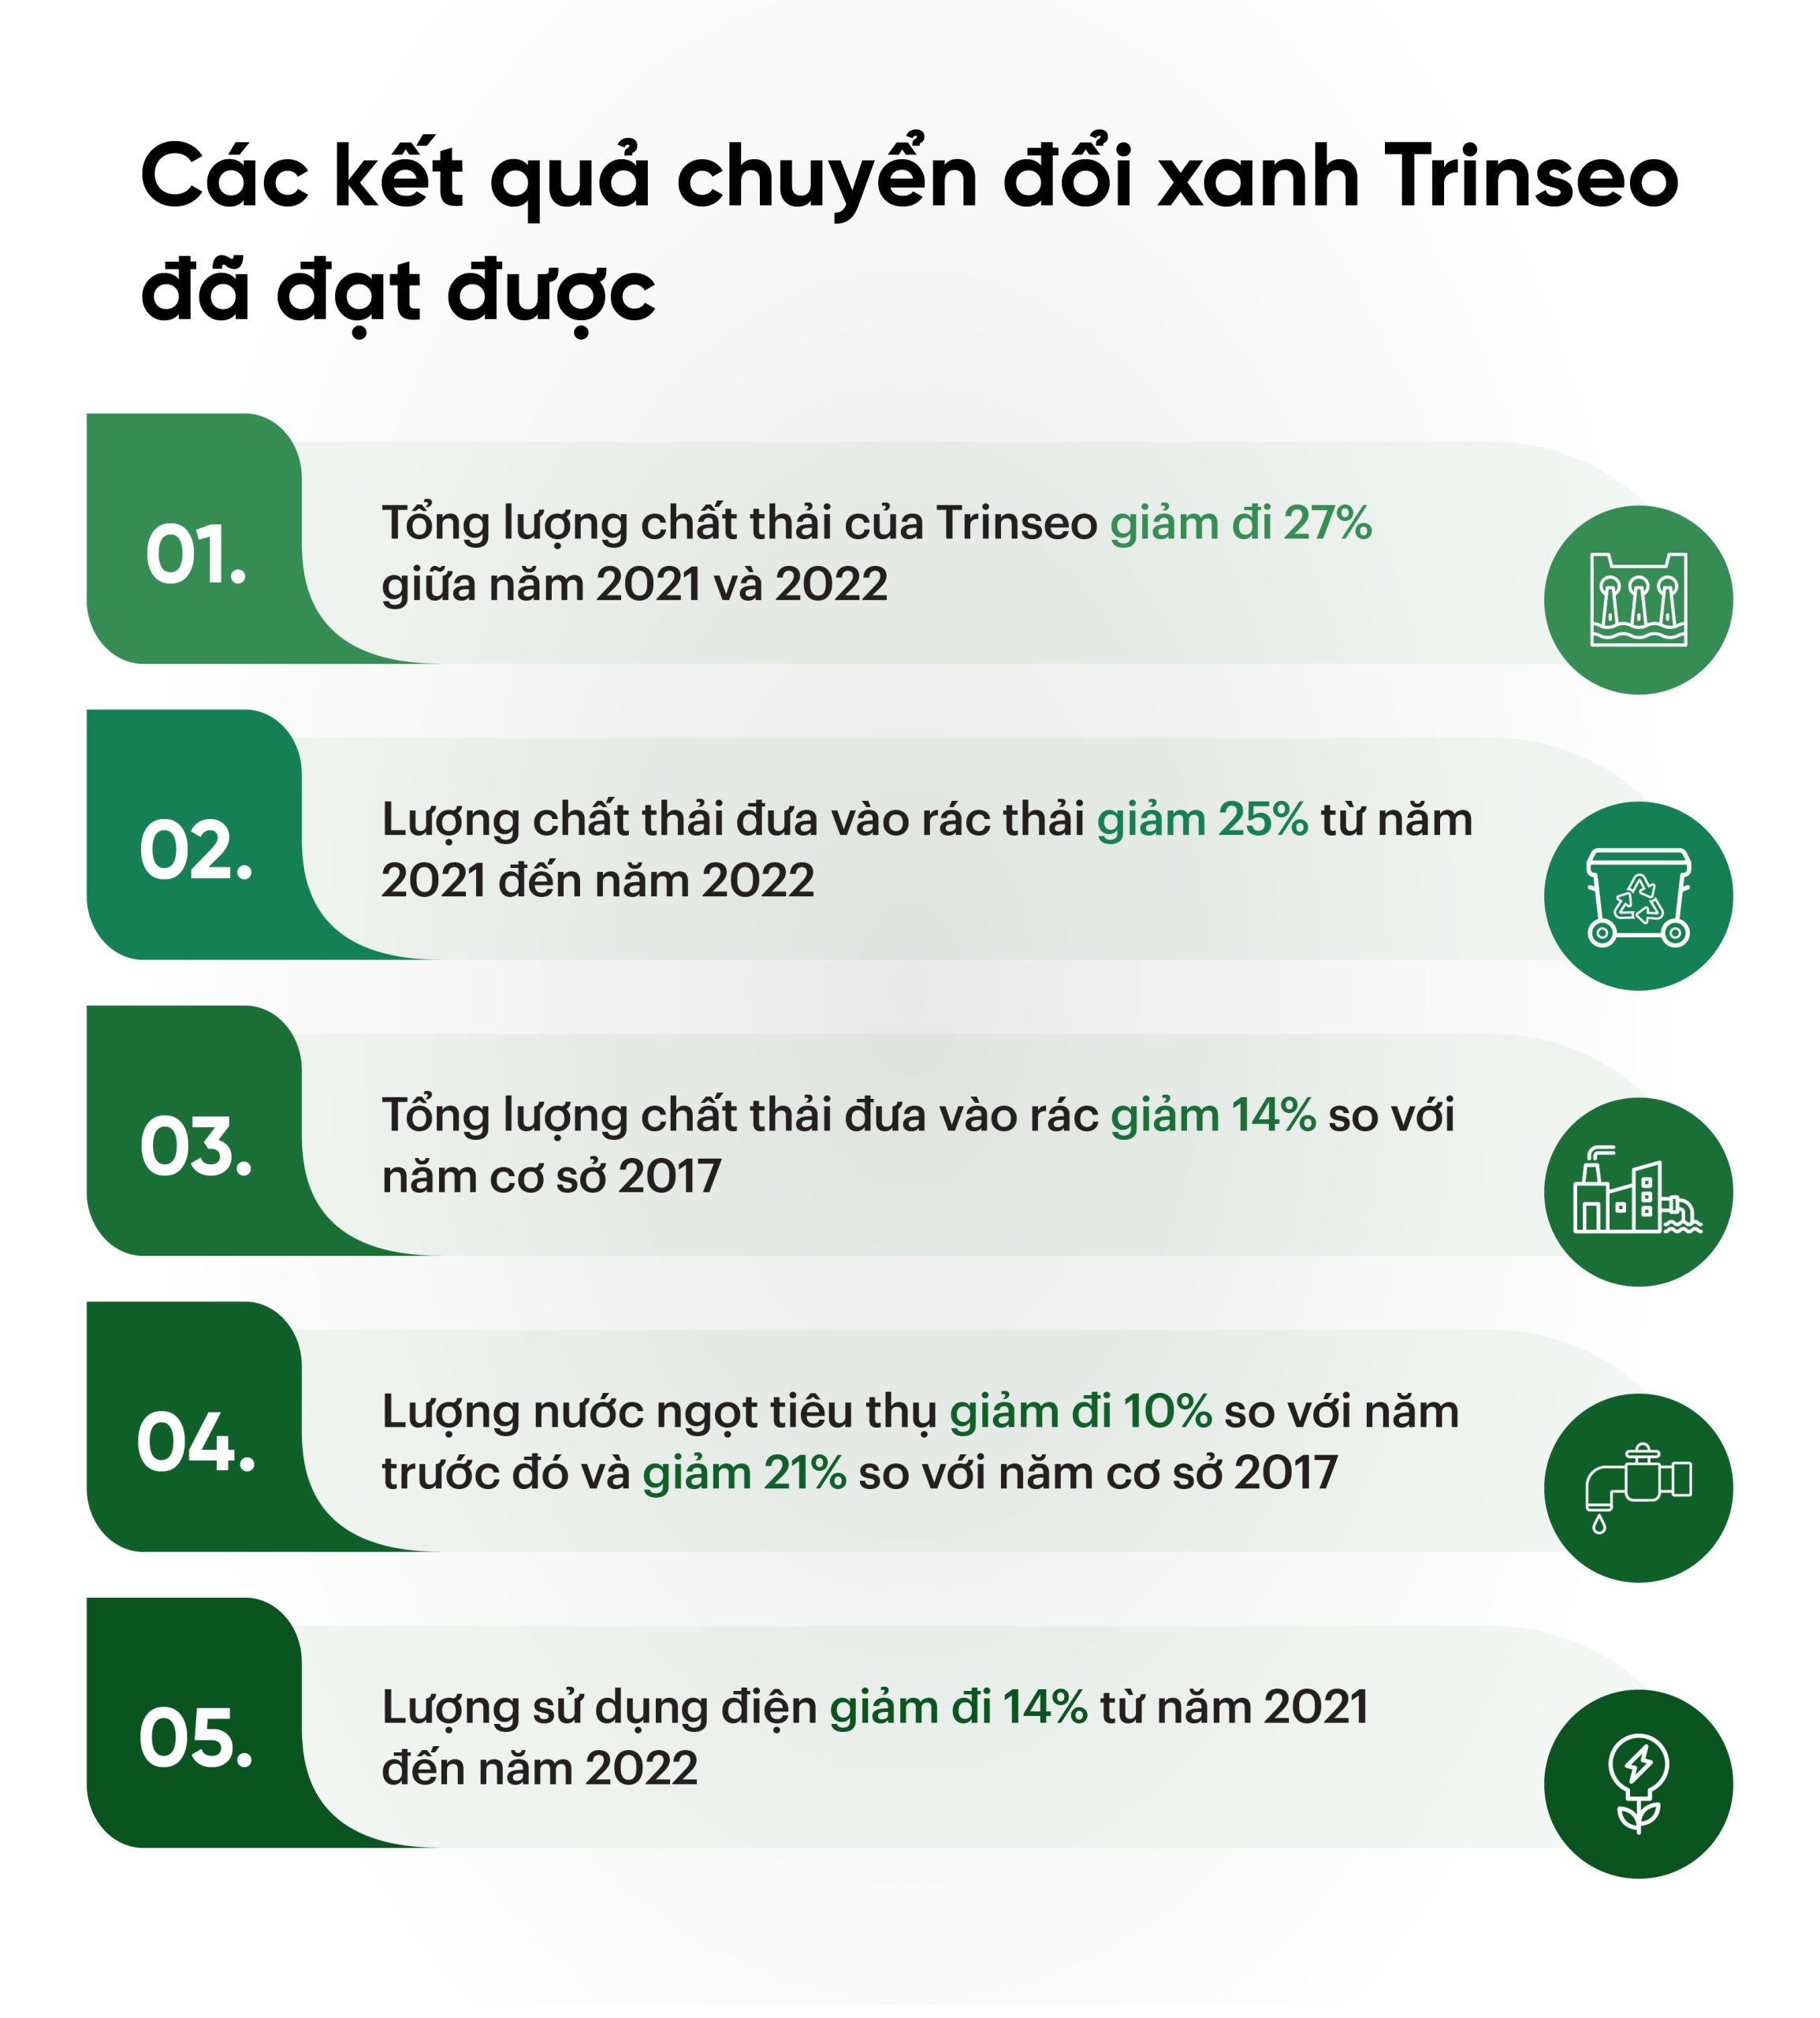 Các kết quả chuyển đổi xanh mà tập đoàn sản xuất nhựa Trinseo đã đạt được